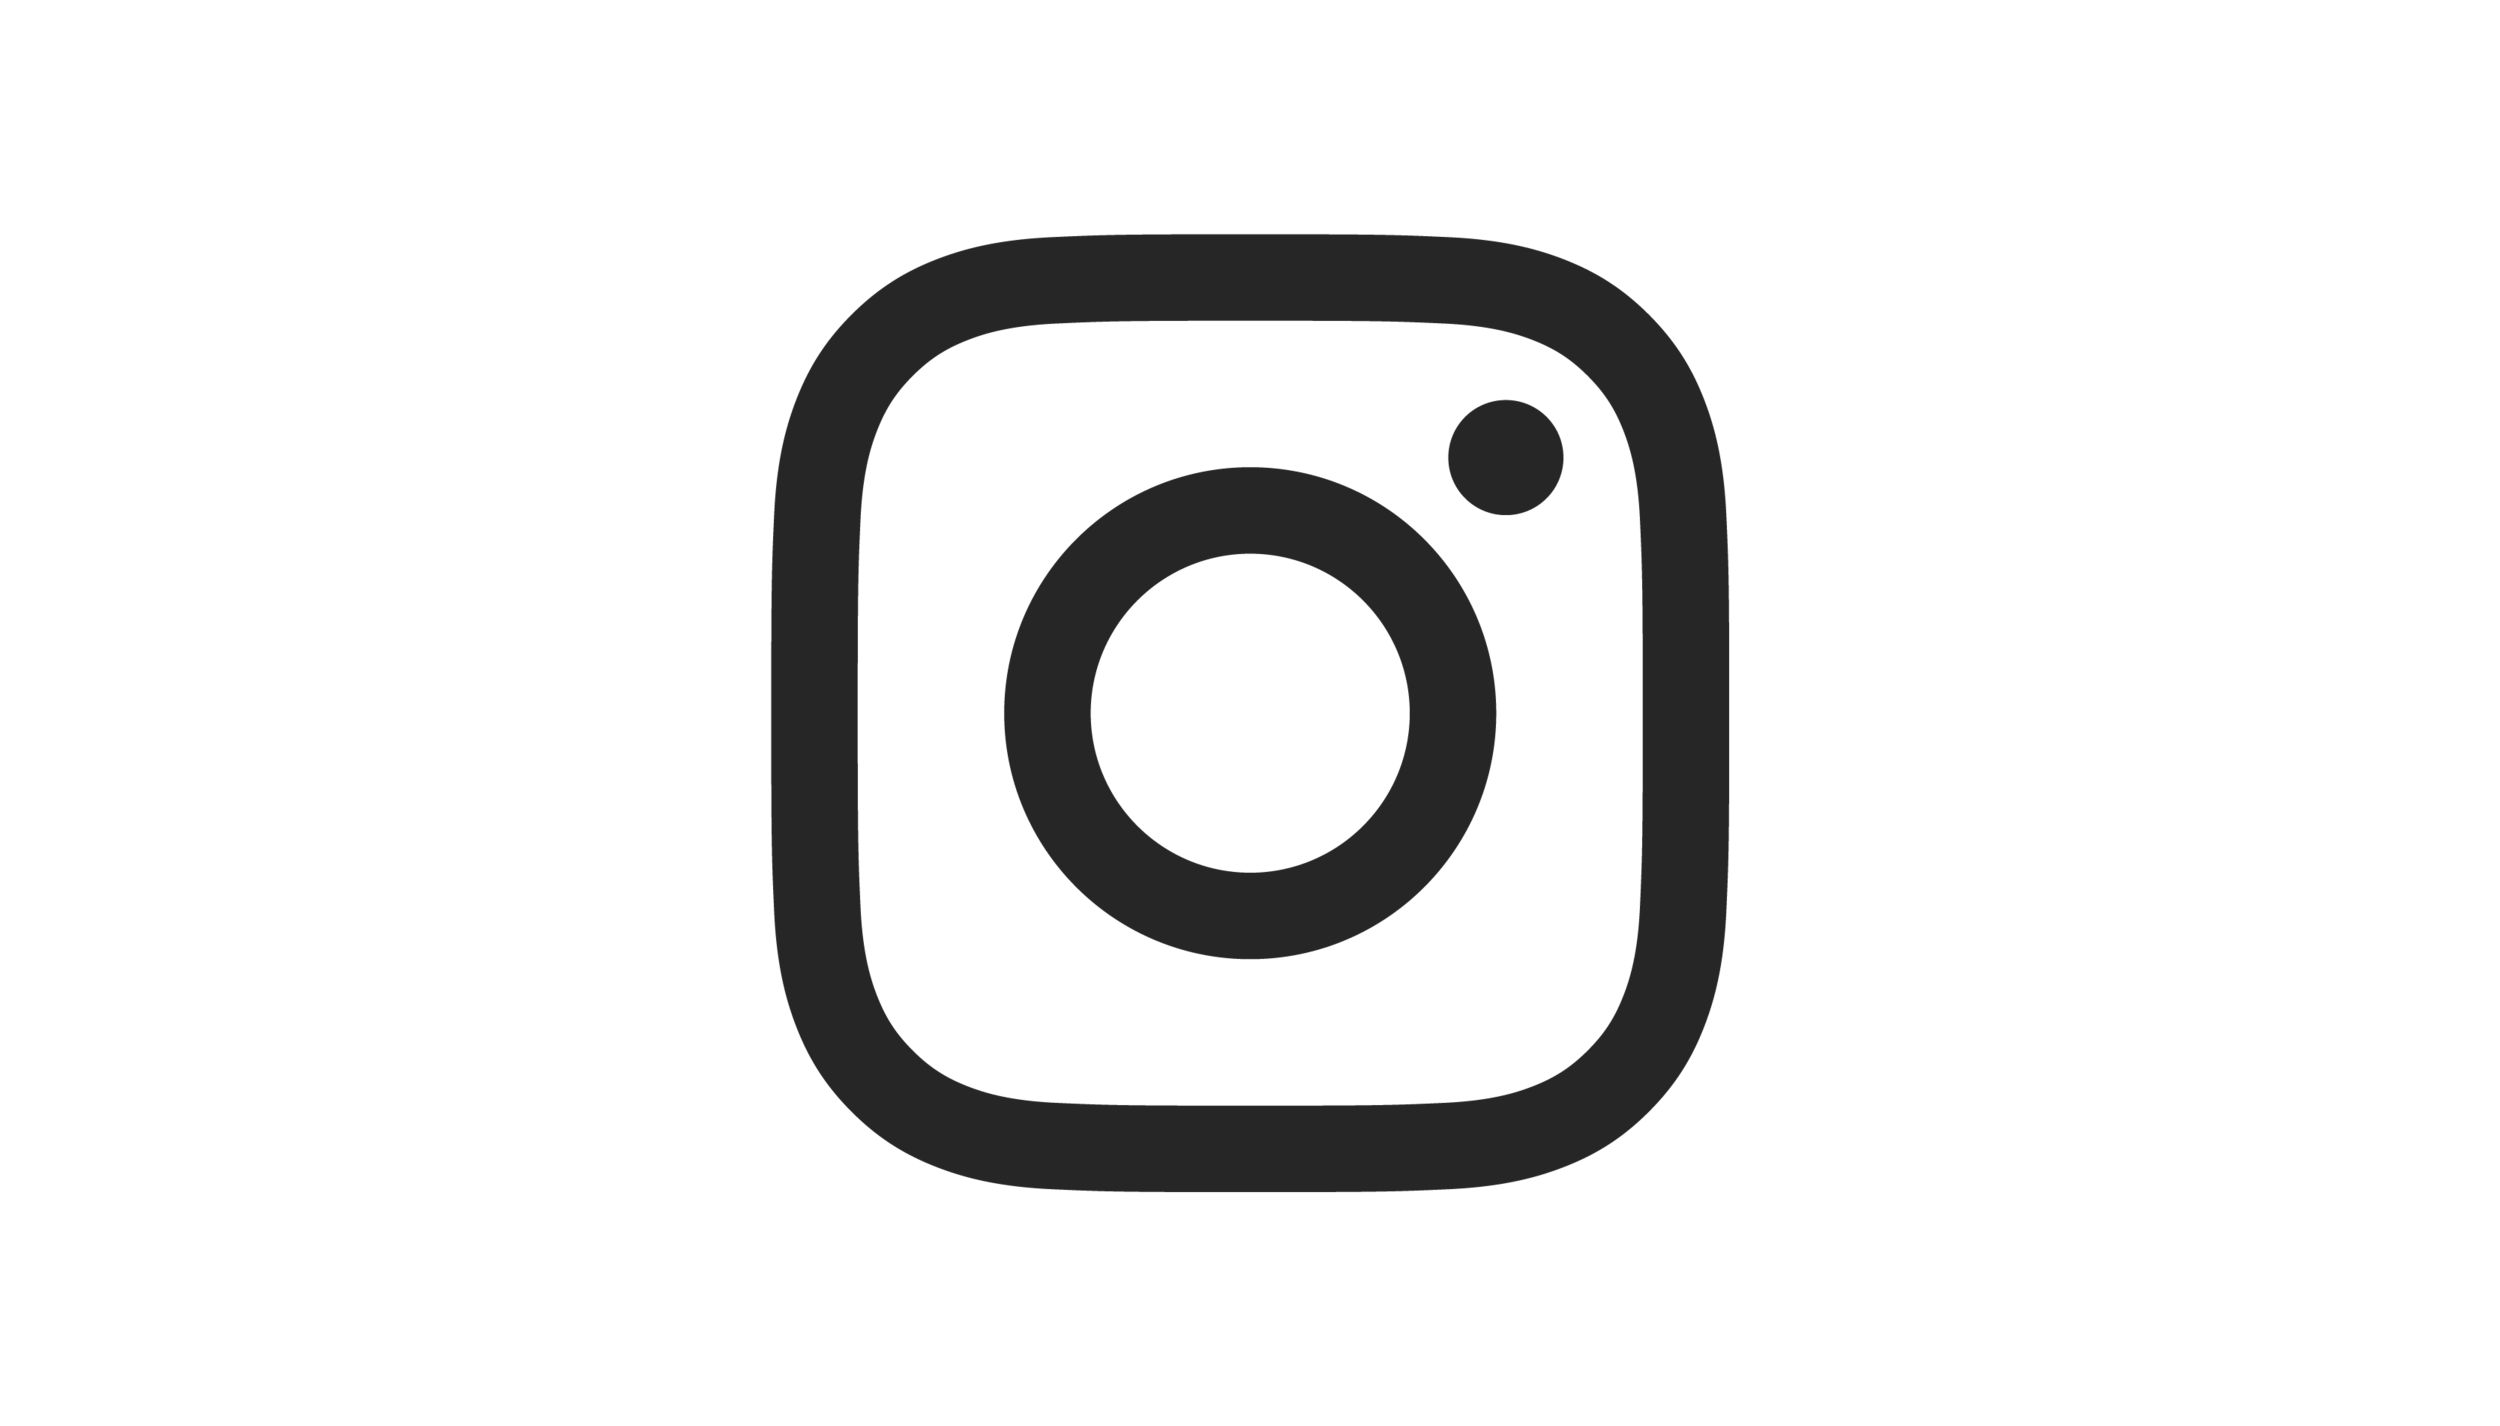 Www instagram com. Инстаграм лого. Значок Инстаграм маленький. Иконка инстаграмма маленькая. Логотип Инстаграм на прозрачном фоне.